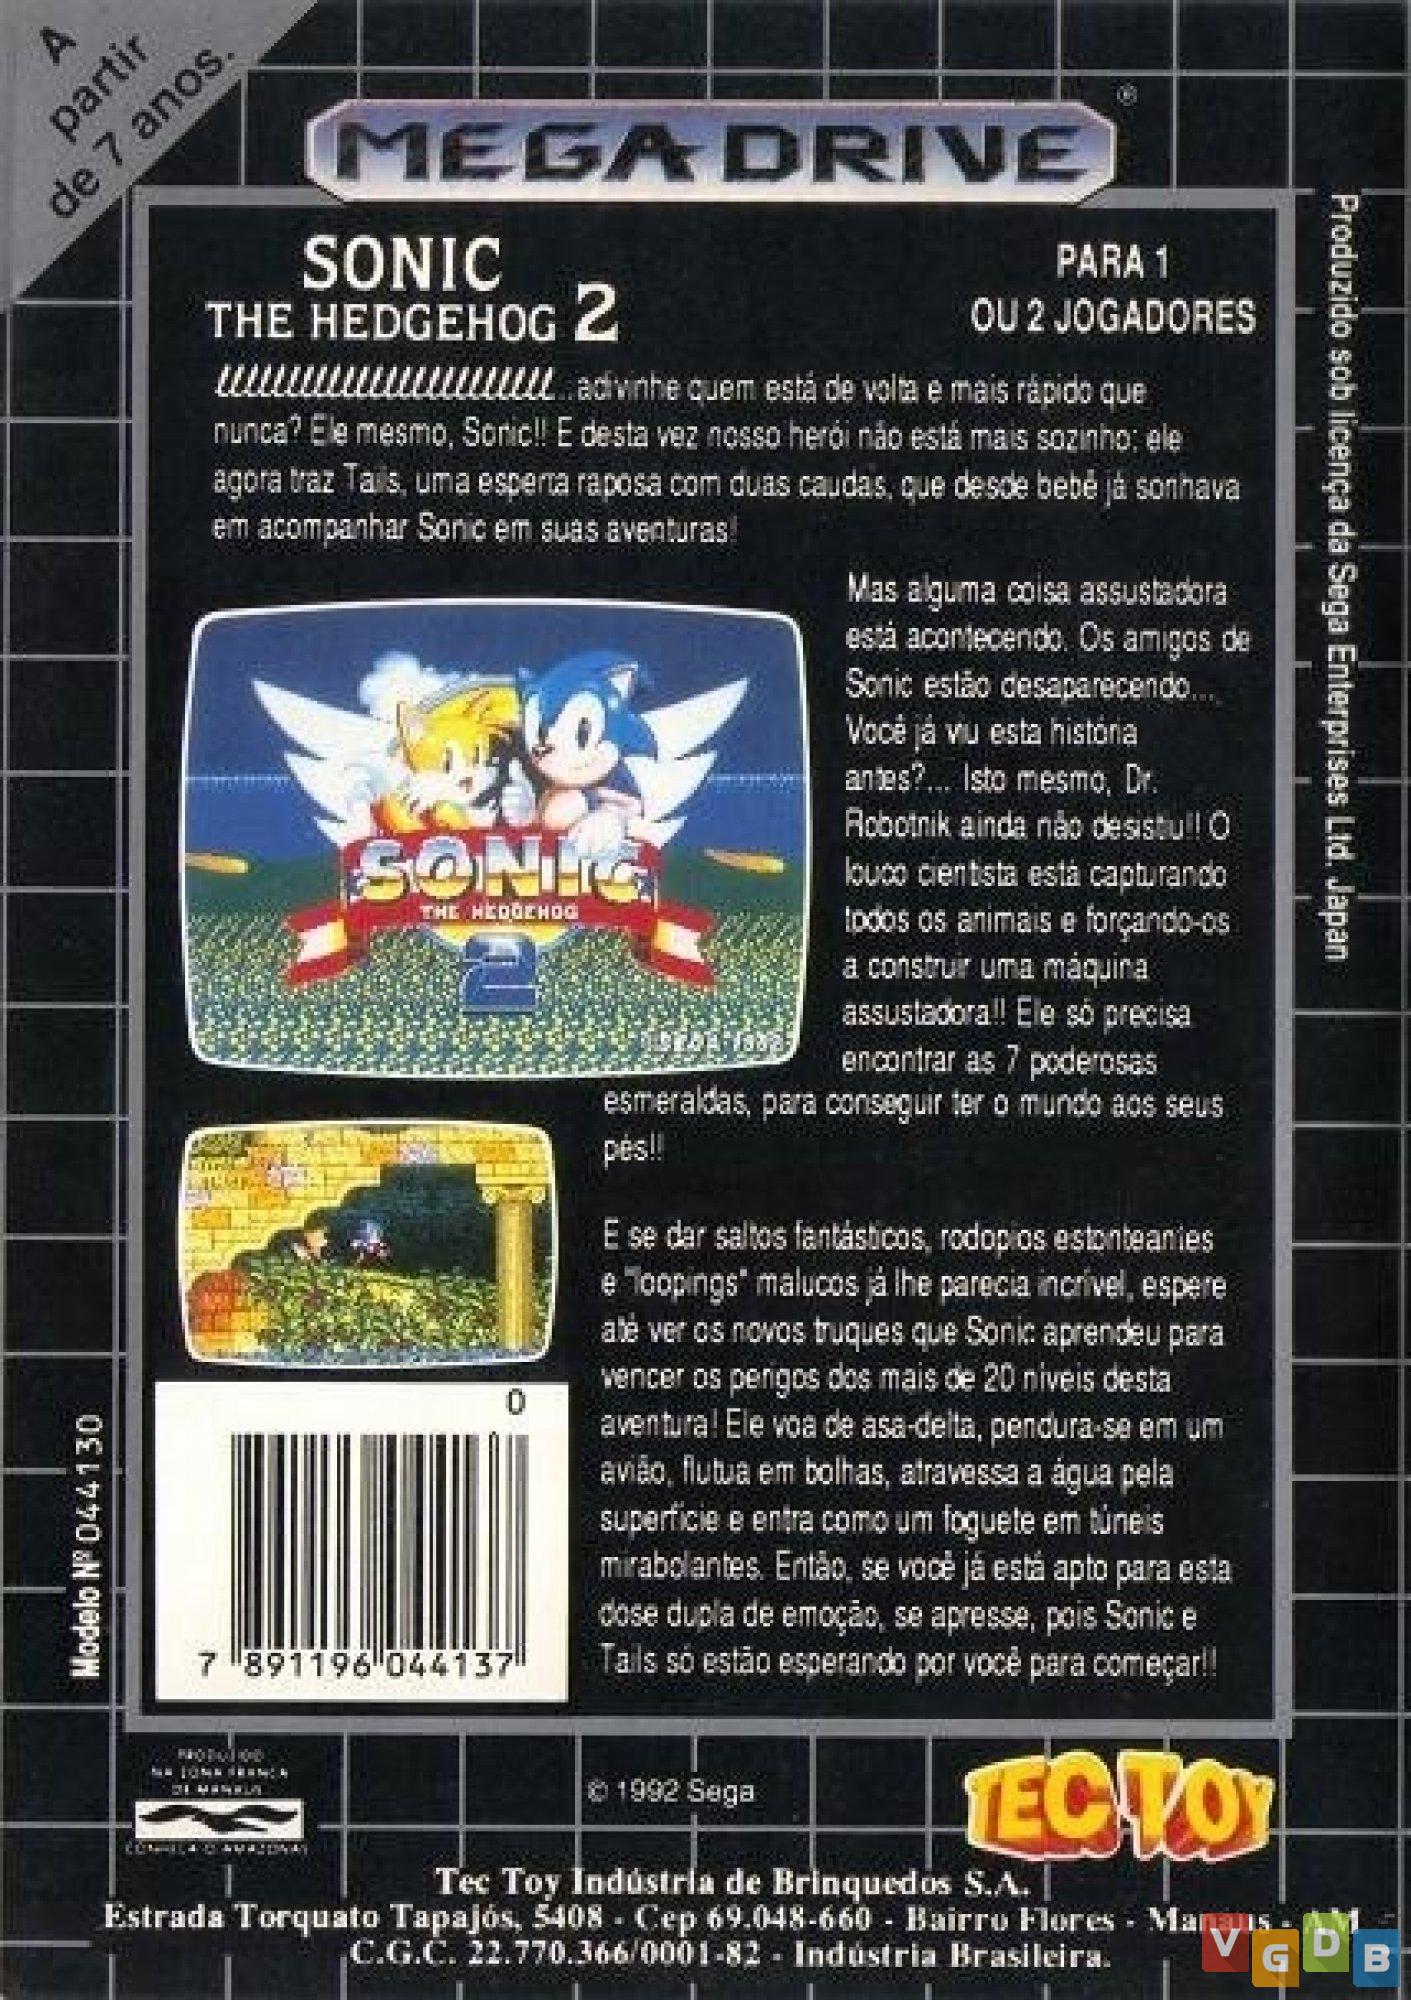 Sonic the Hedgehog 2 Classico Sega Mega Drive Midia Digital Ps3 - WR Games  Os melhores jogos estão aqui!!!!